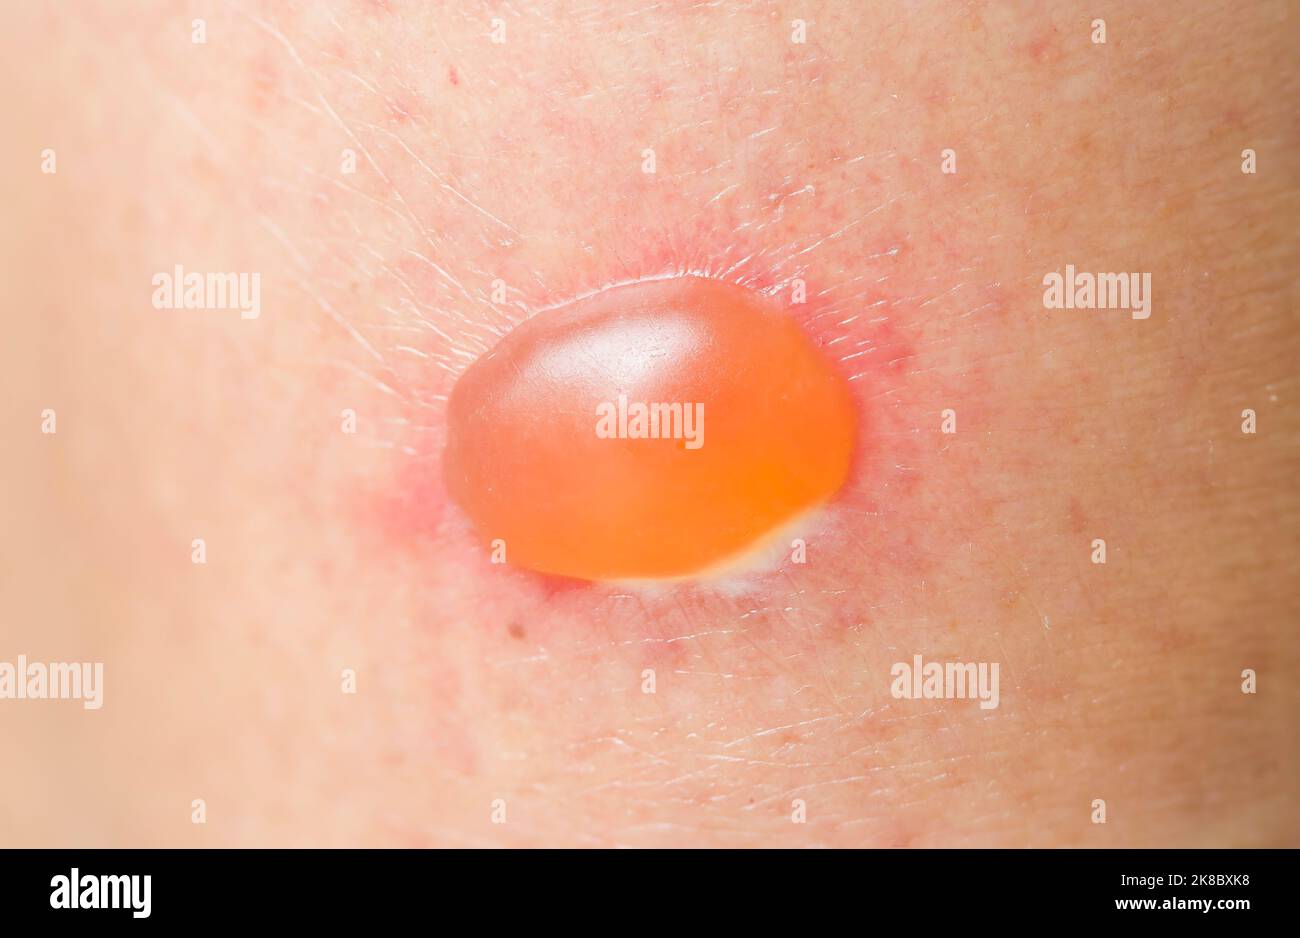 Dermatologie und Hautkrankheiten: Blister auf der Haut einer asiatischen Frau aufgrund einer Hautinfektion oder allergischen Reaktion Stockfoto